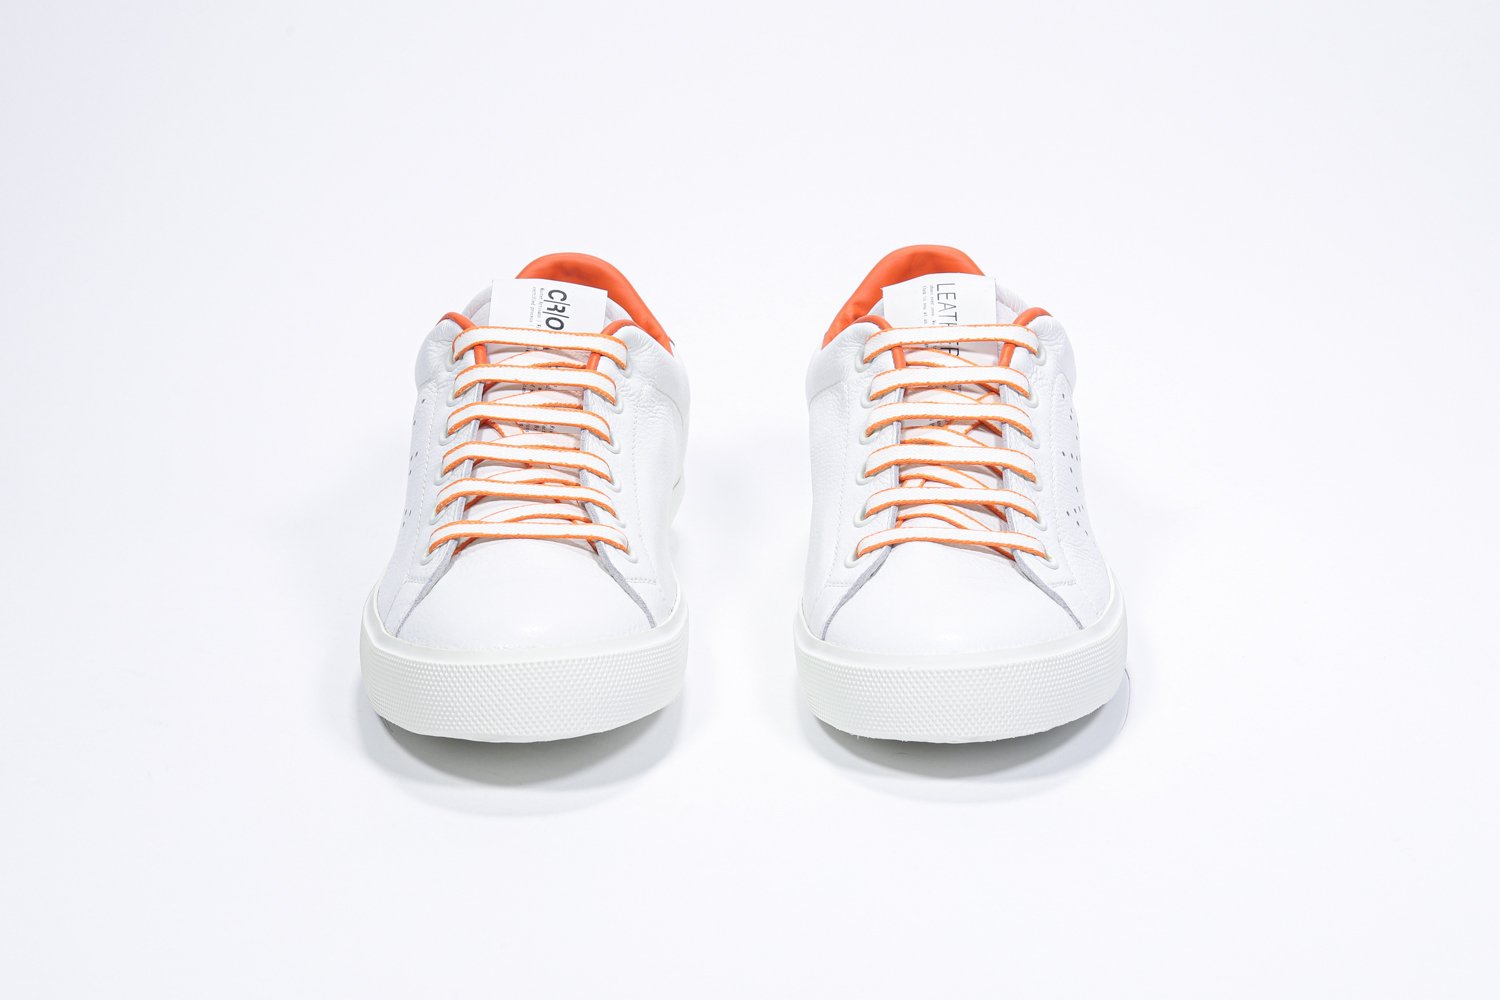 Vista frontale di BASSE  sneaker  bianco con dettagli arancioni e logo della corona traforato sulla tomaia. Tomaia in pelle e suola in gomma bianca.